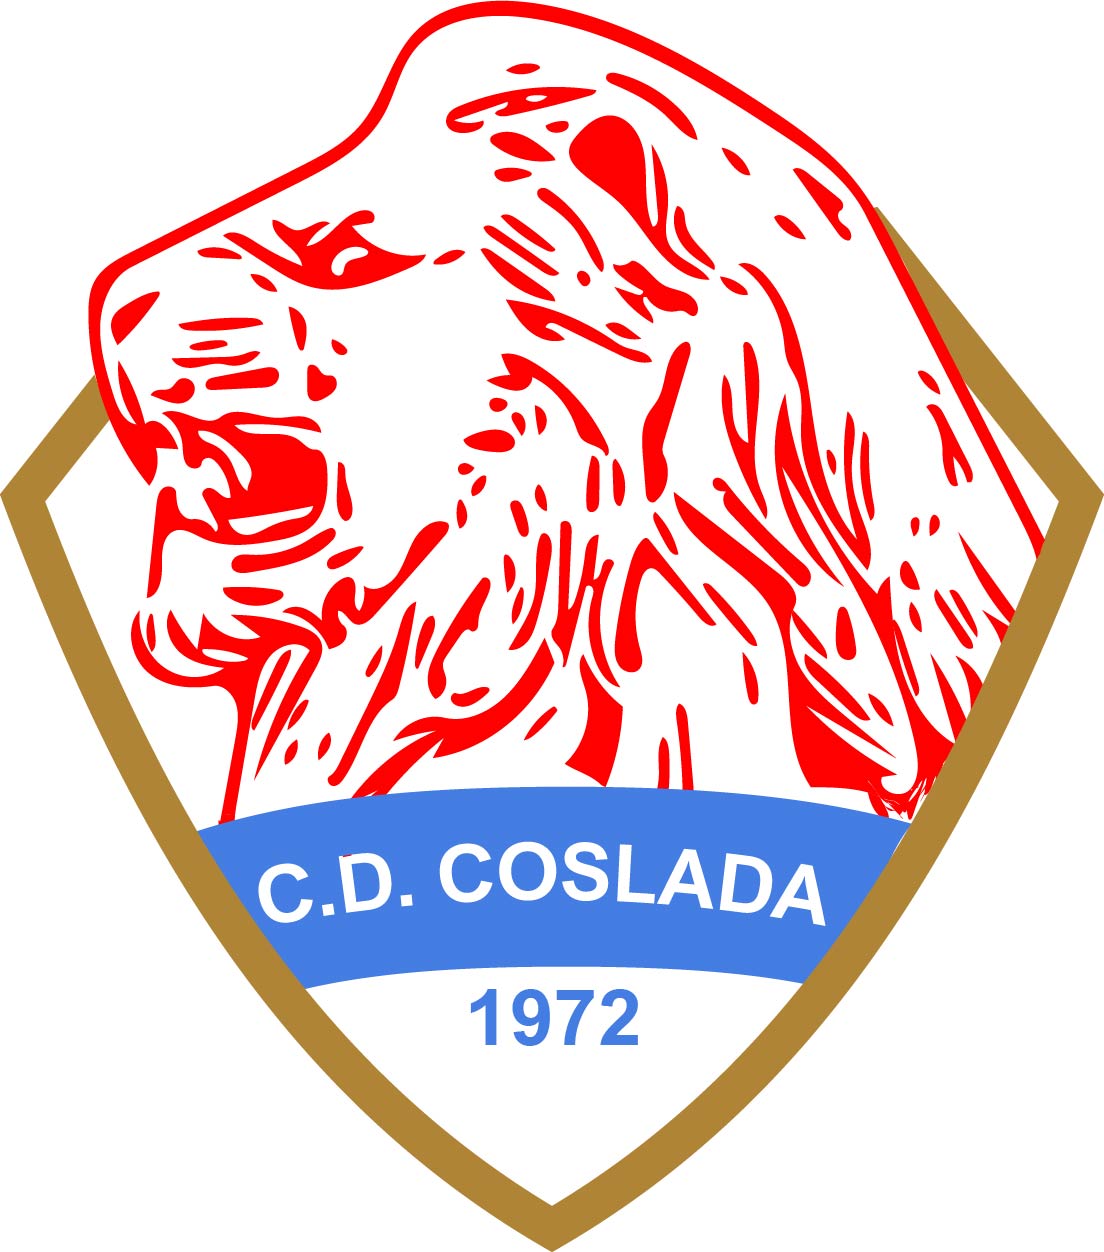 C.D. COSLADA